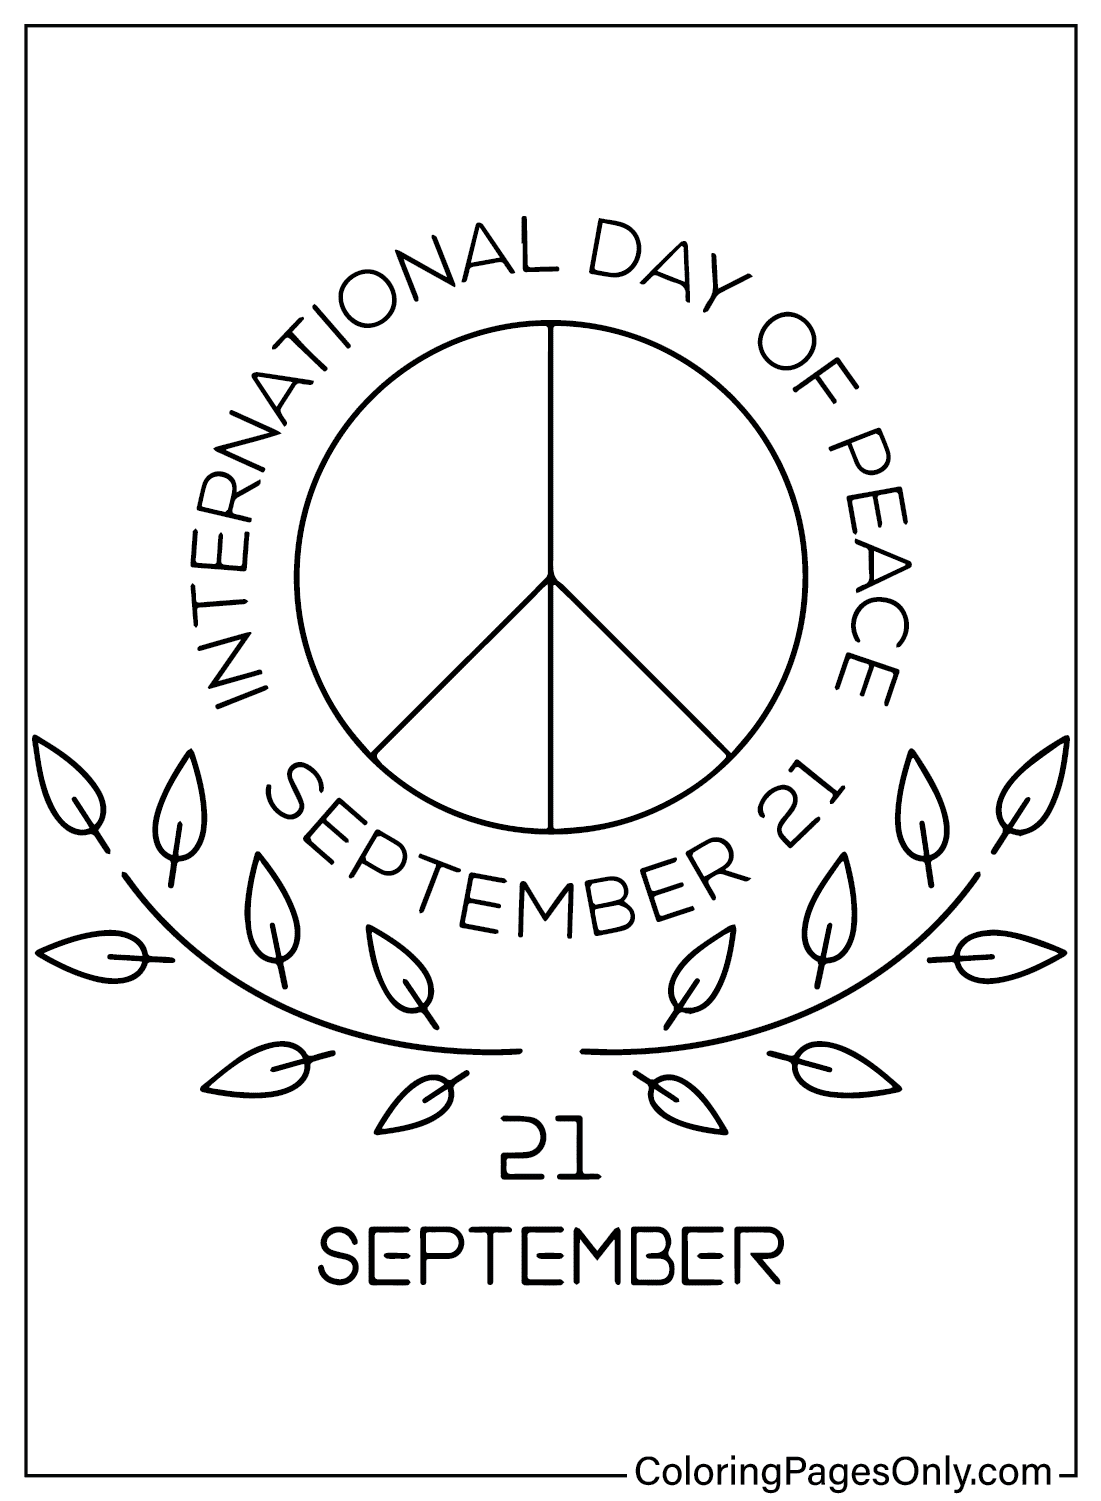 Раскрасим изображения Международного дня мира к Международному дню мира